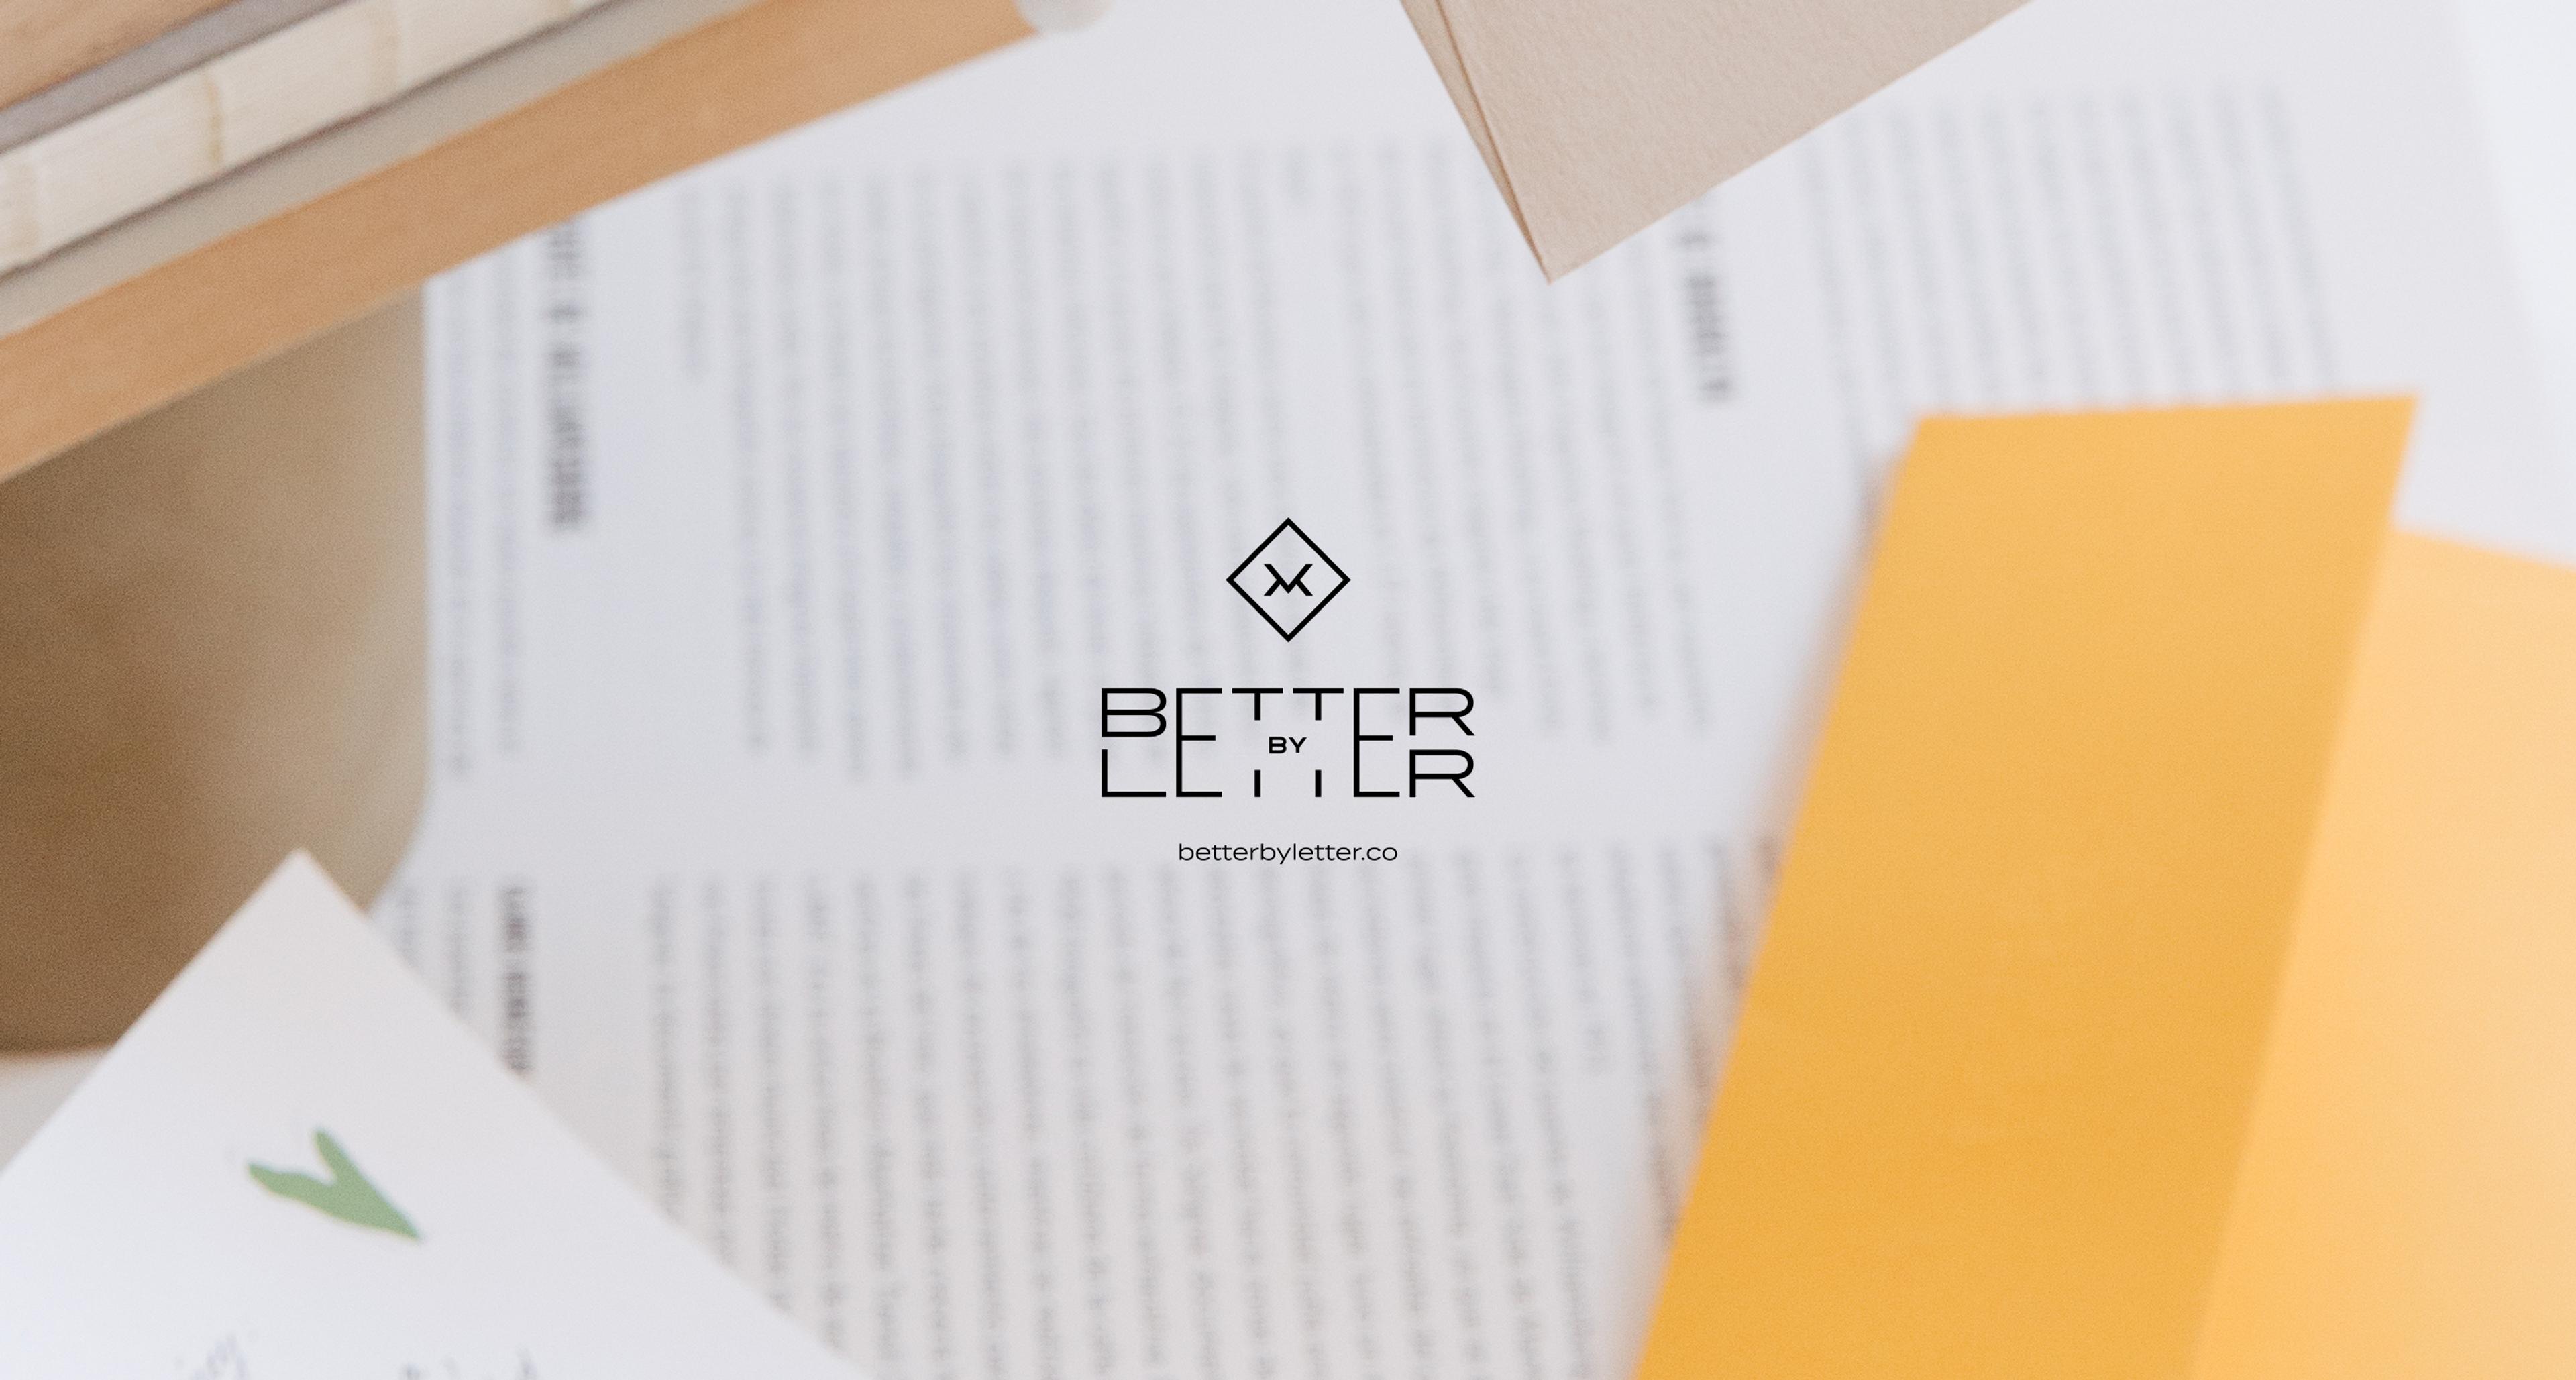 Better by Letter by Blavet Studio